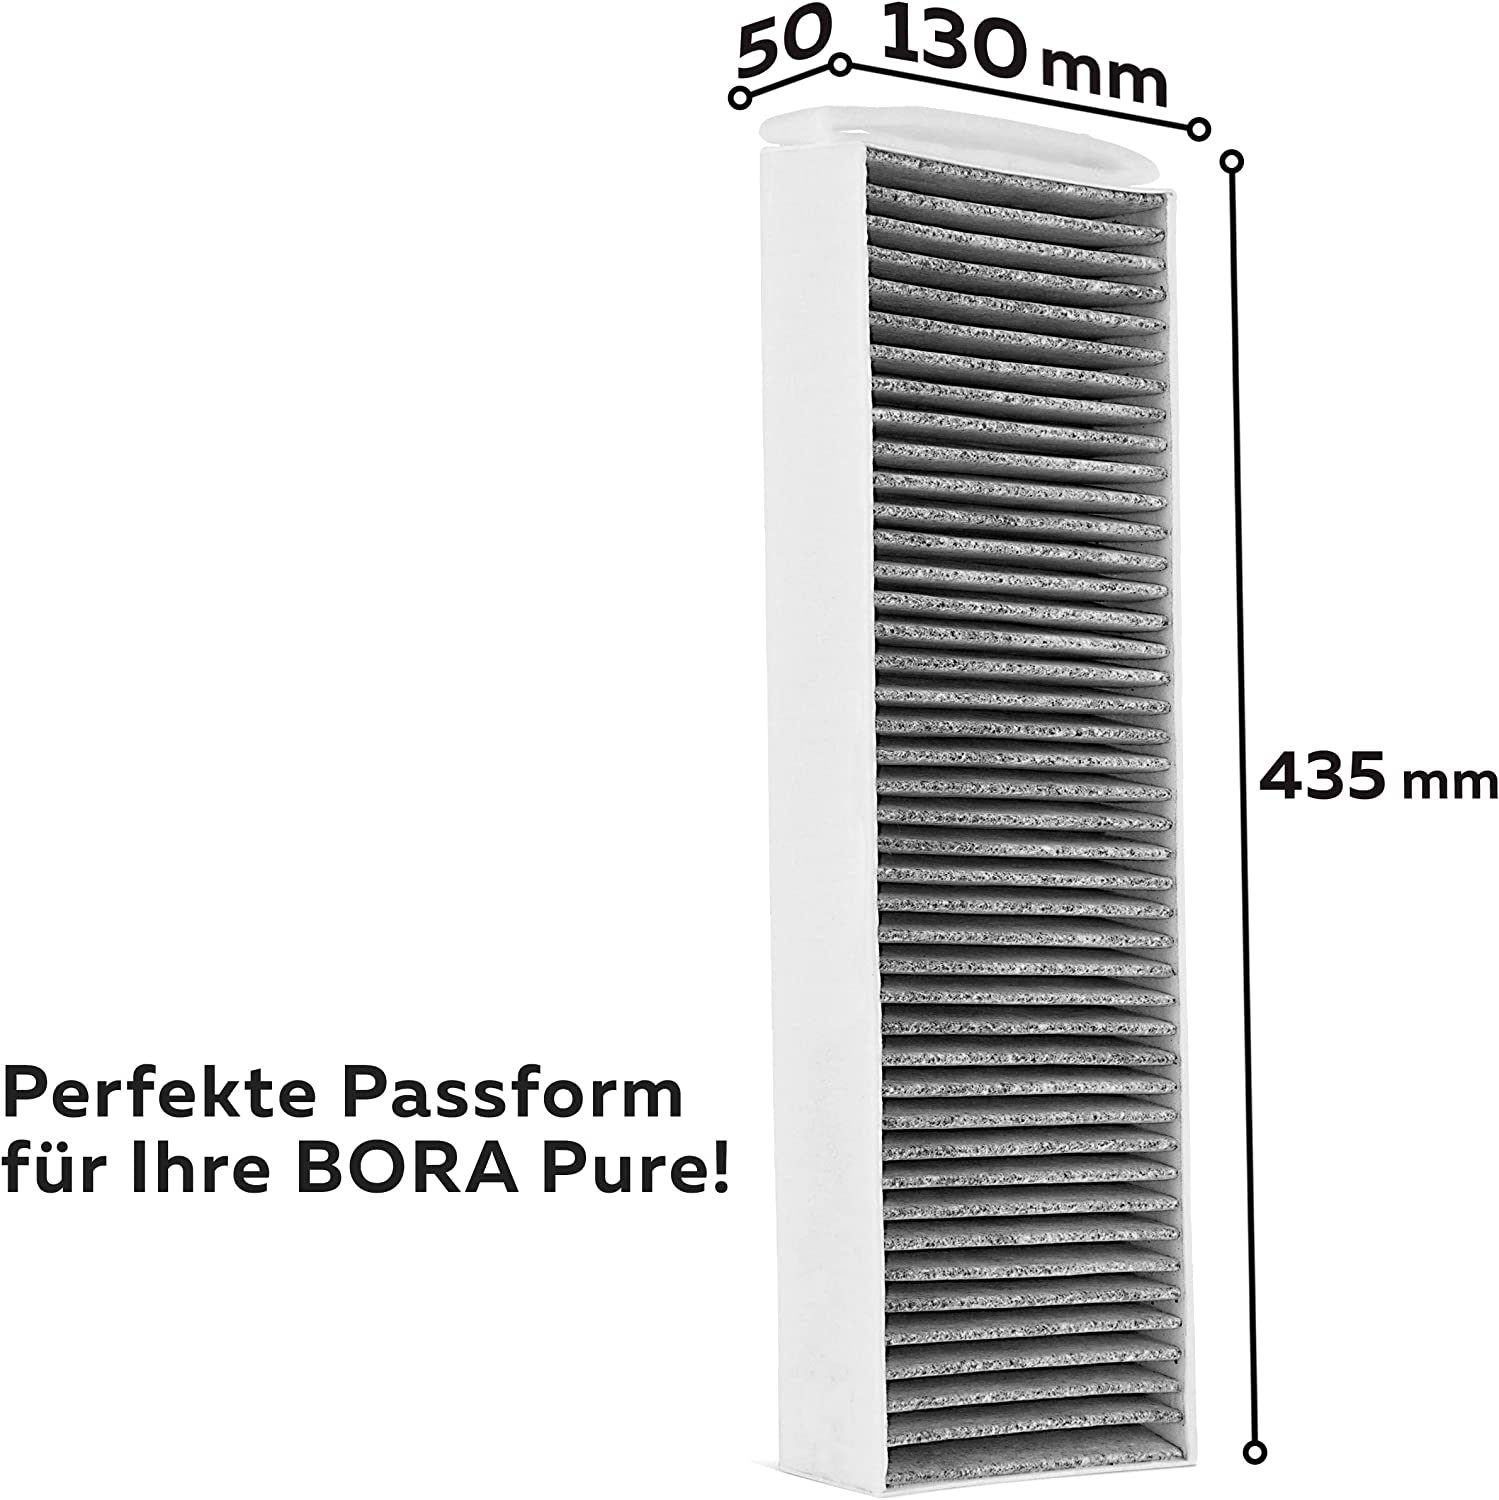 Aktivkohlefilter (1 Filter) für Bora Pure PUAKF, für Ihr Umluftkochfeld PURU oder PUXU